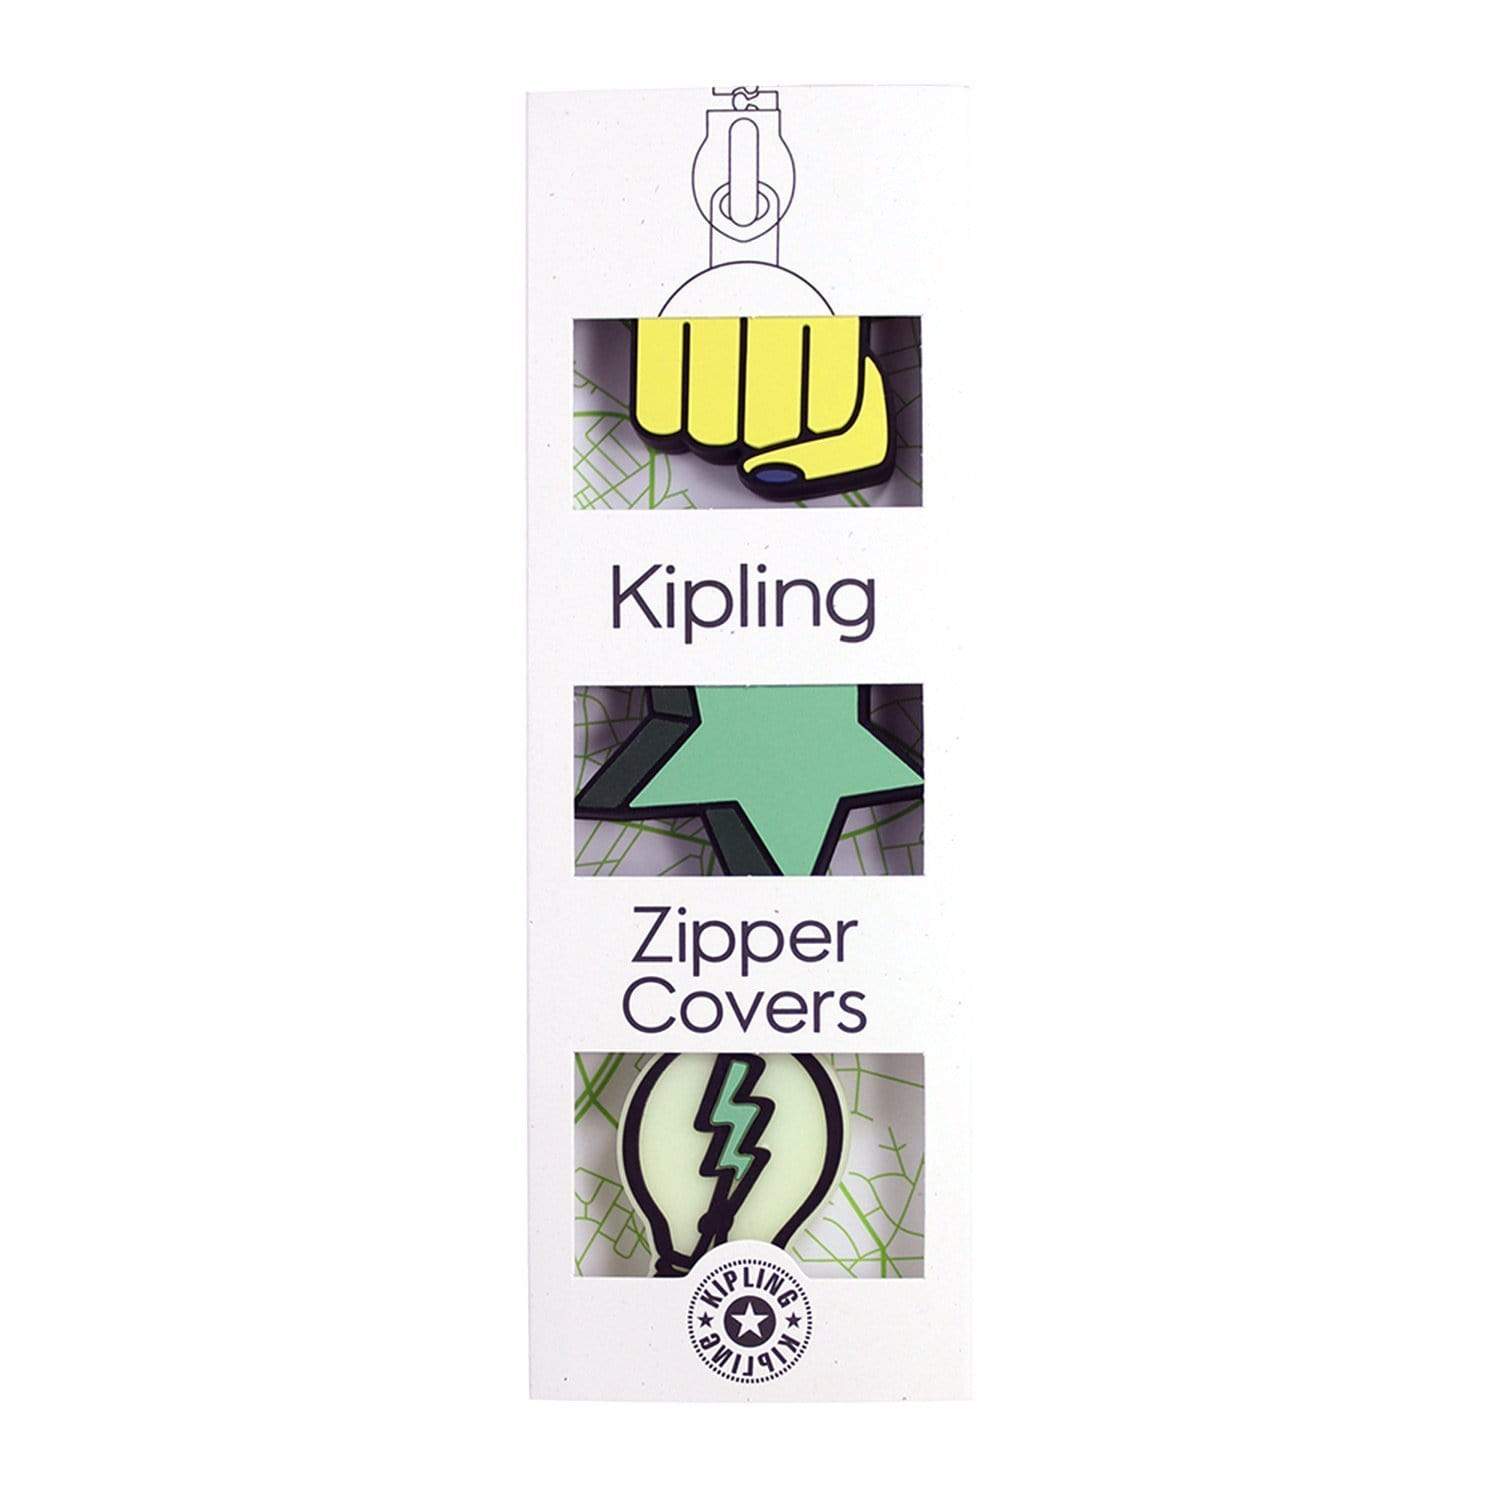 Kipling غطاء سحاب بولير من بي تي إس - لمبة قبضة ميكس ستار - 00107-52Y - جاشنمال هوم